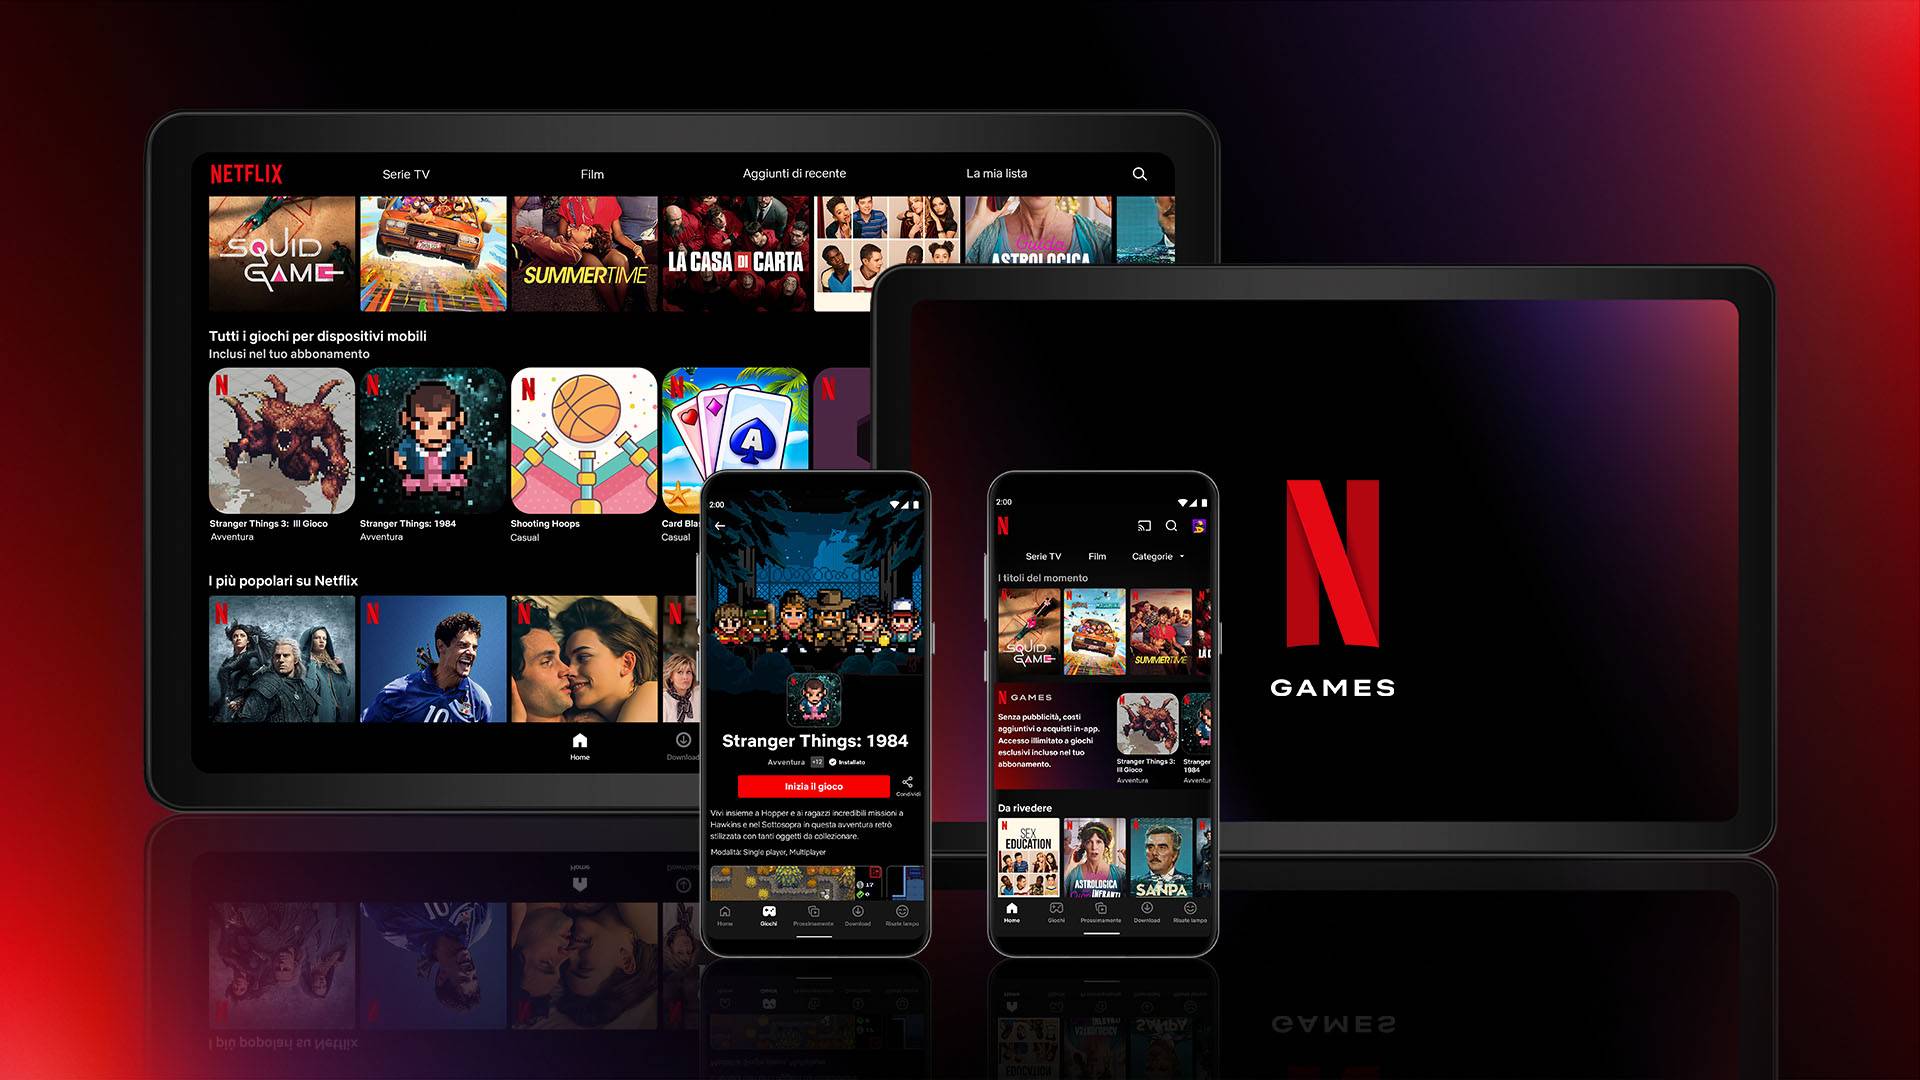 De gedurfde sprong van Netflix: een revolutie in gaming door naadloos streamen